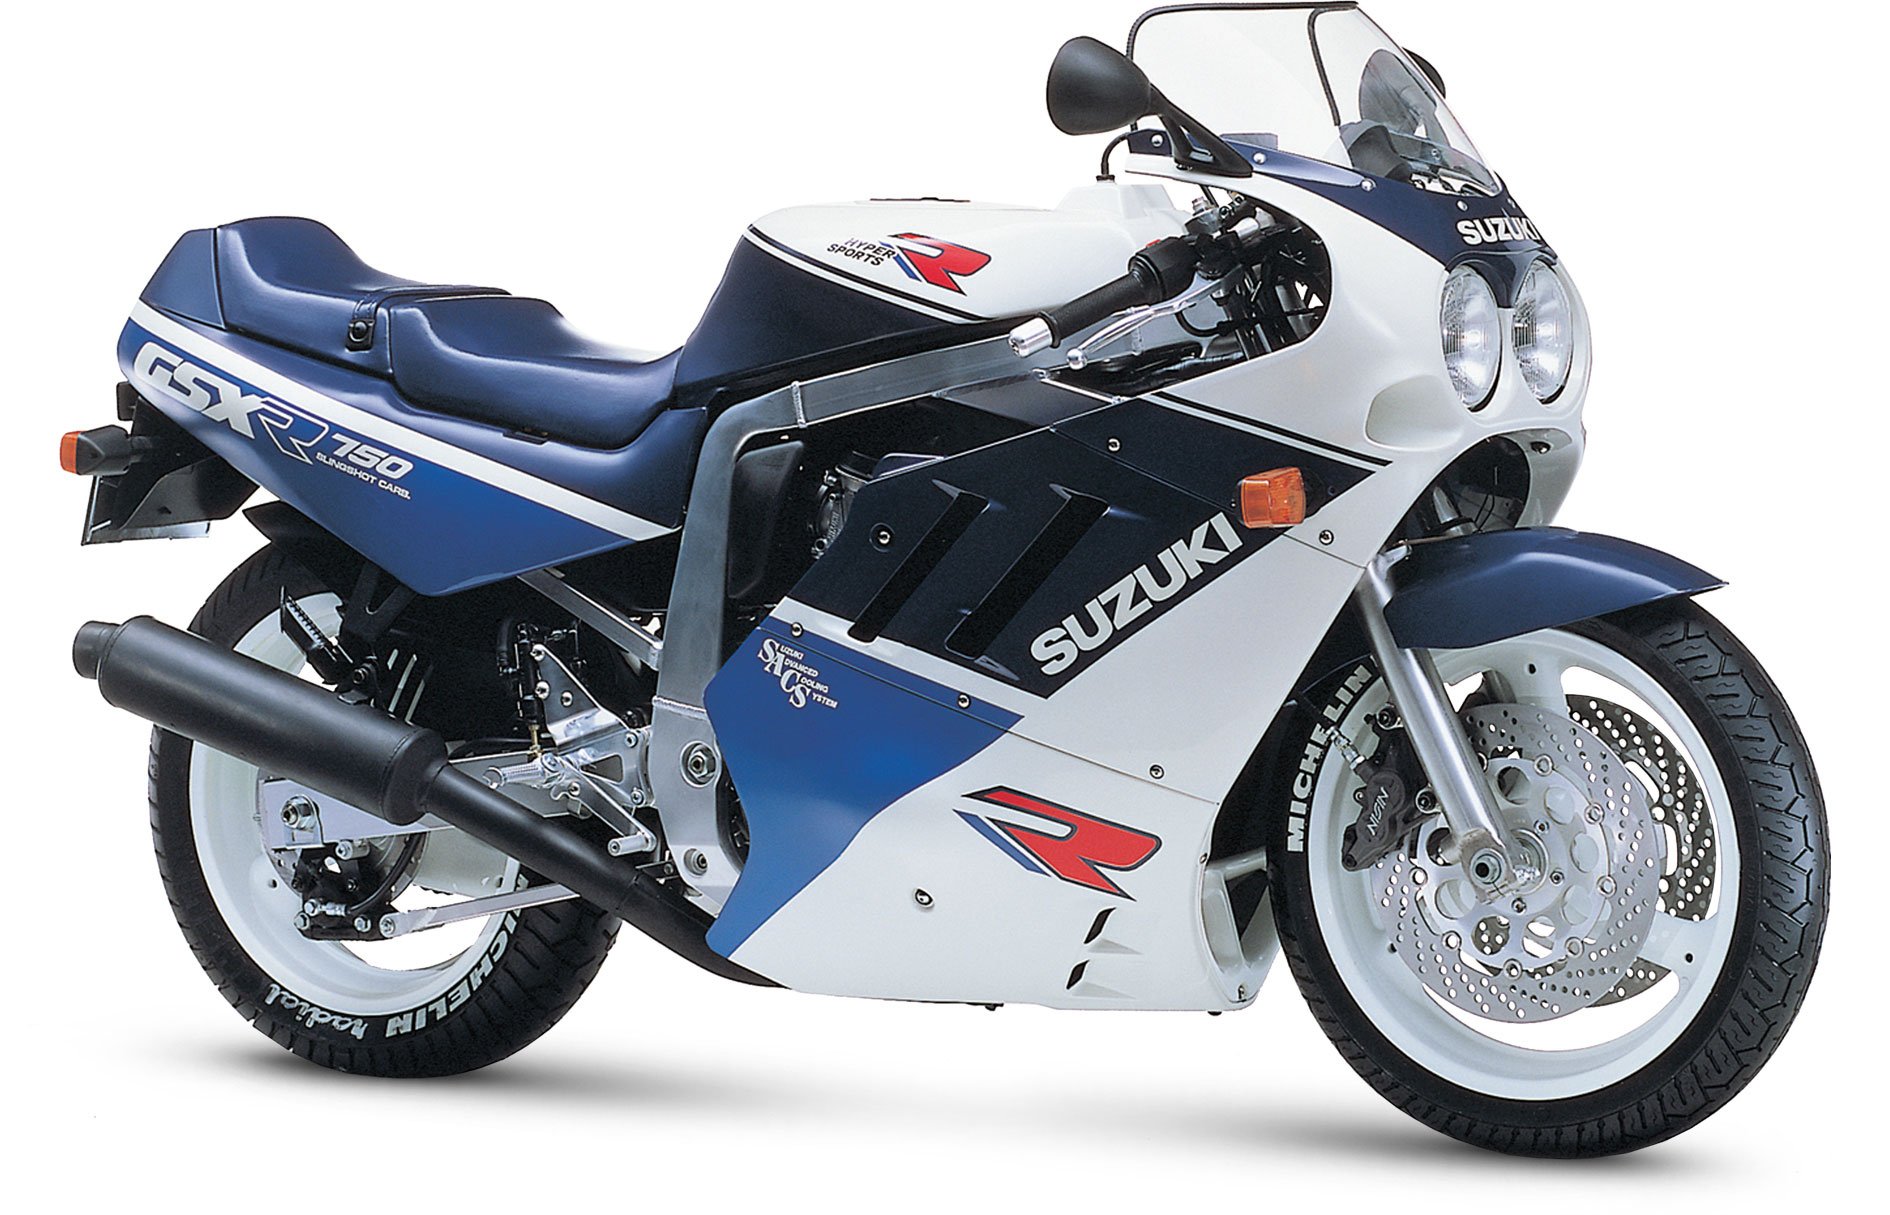 1988, Suzuki, Gsx r750, Motorcycles Wallpaper